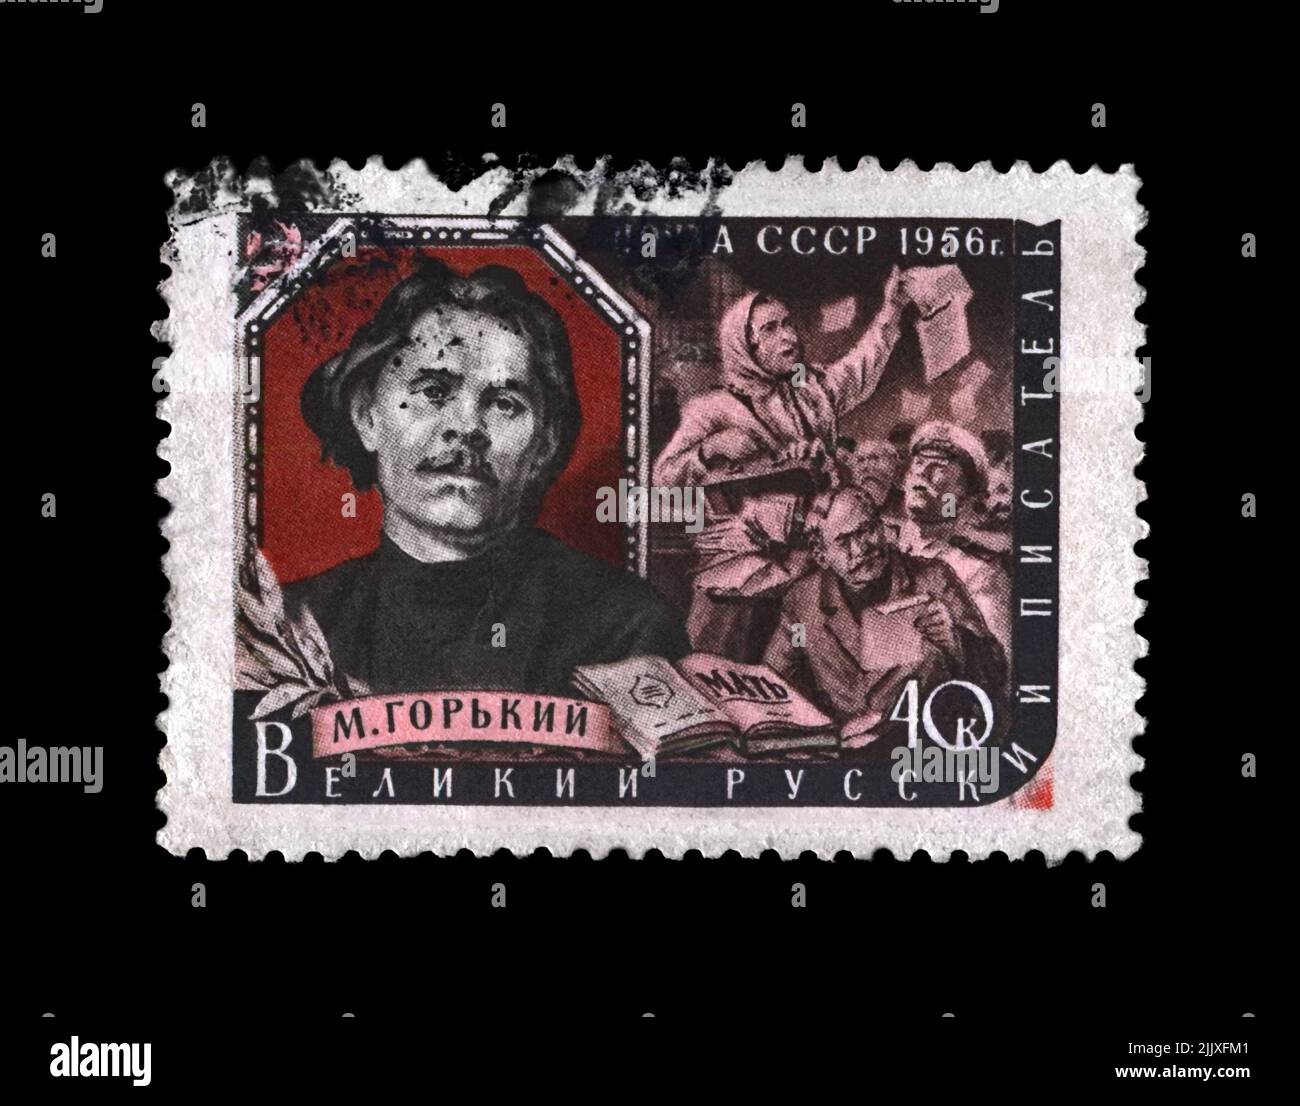 Maxim Gorky aka Alexei Maximovich Peshkov (1868-1936), famoso scrittore russo, drammaturgo, politico, circa 1956. Francobollo cancellato stampato in URSS Foto Stock